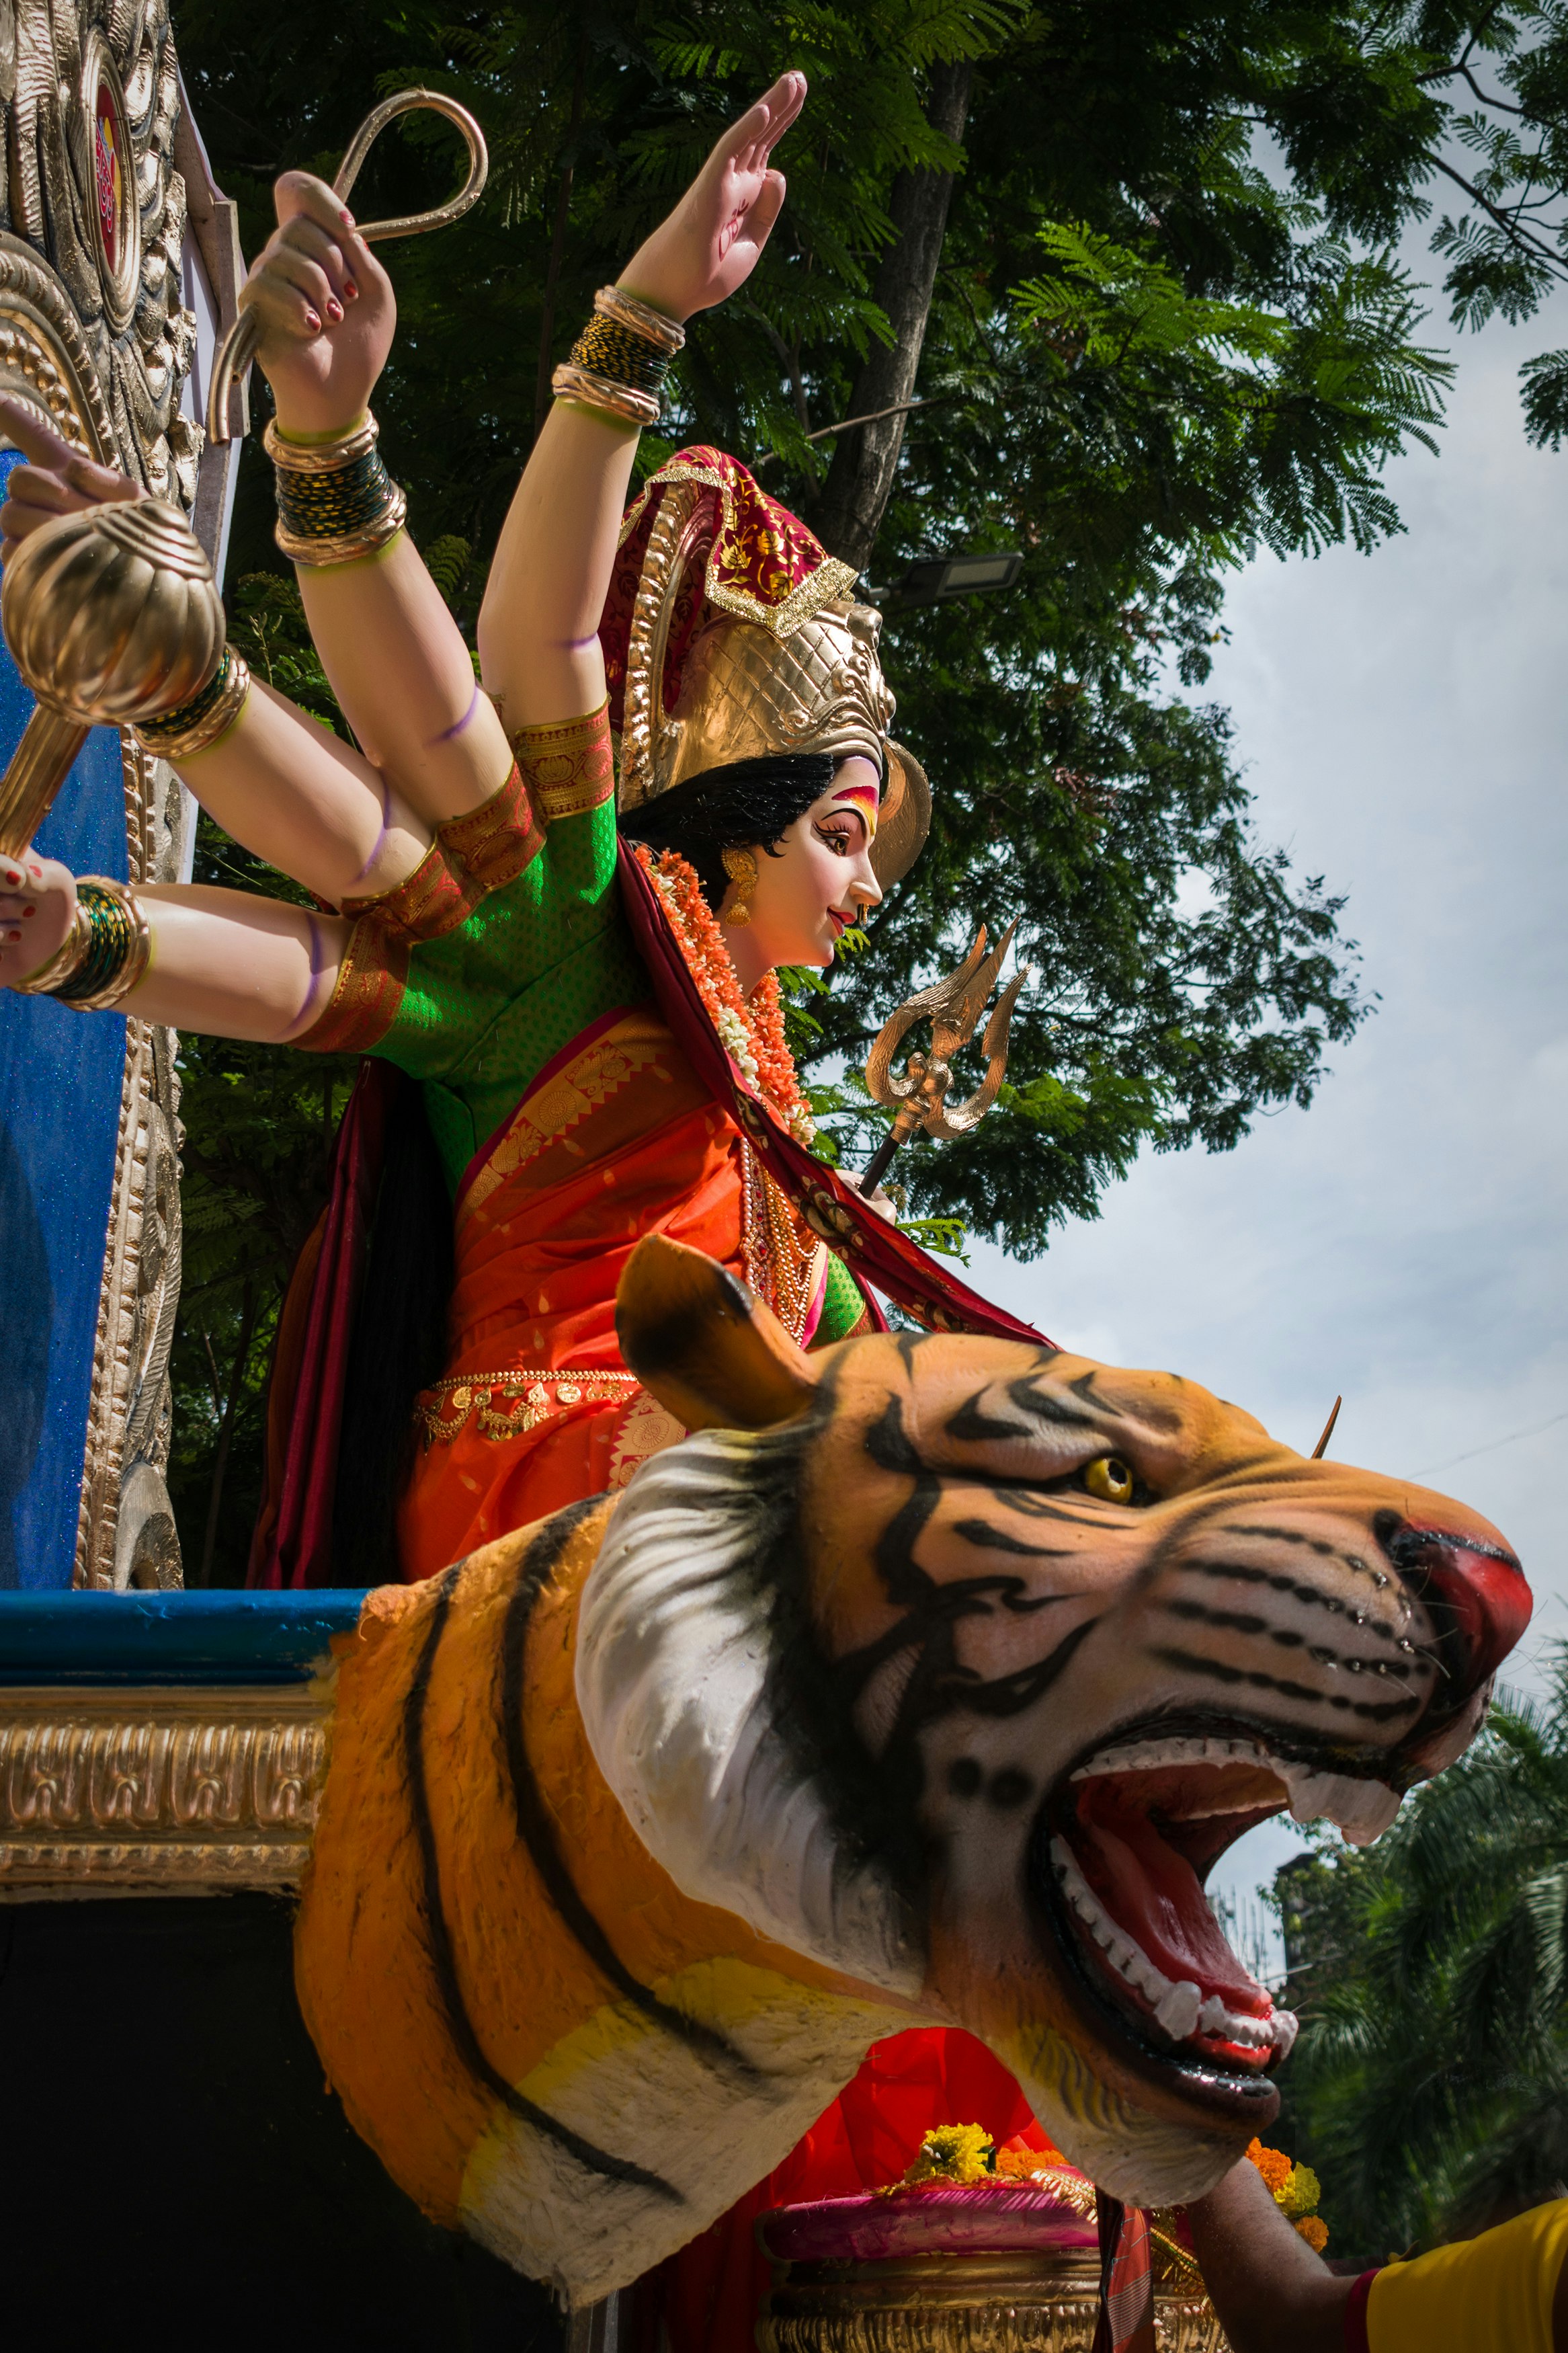 A beautiful idol of Maa Durga at a workshop in Mumbai during Navratri 2019